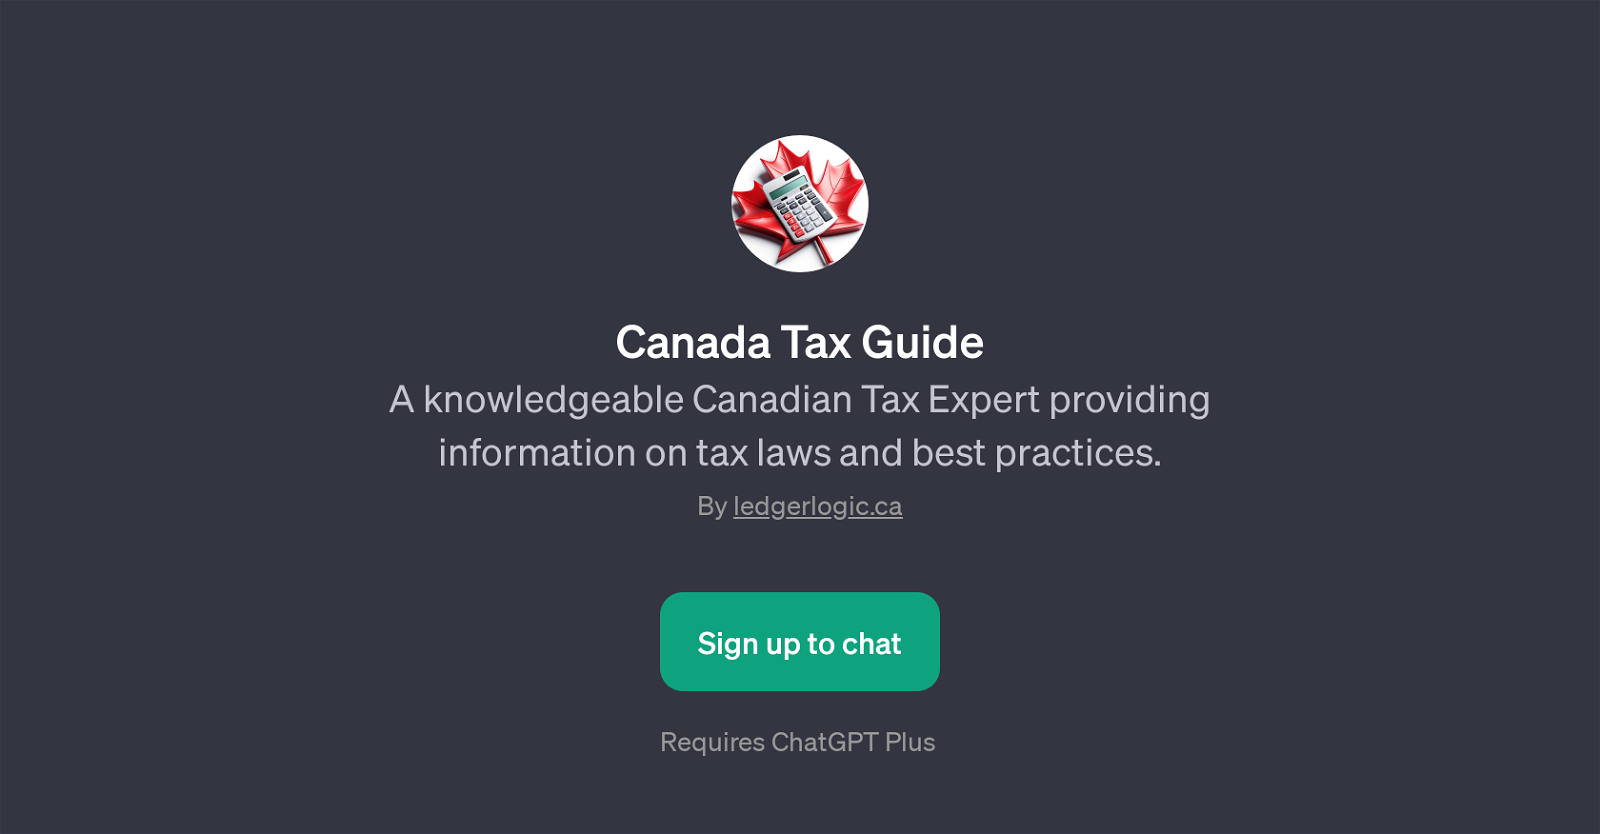 Canada Tax Guide website